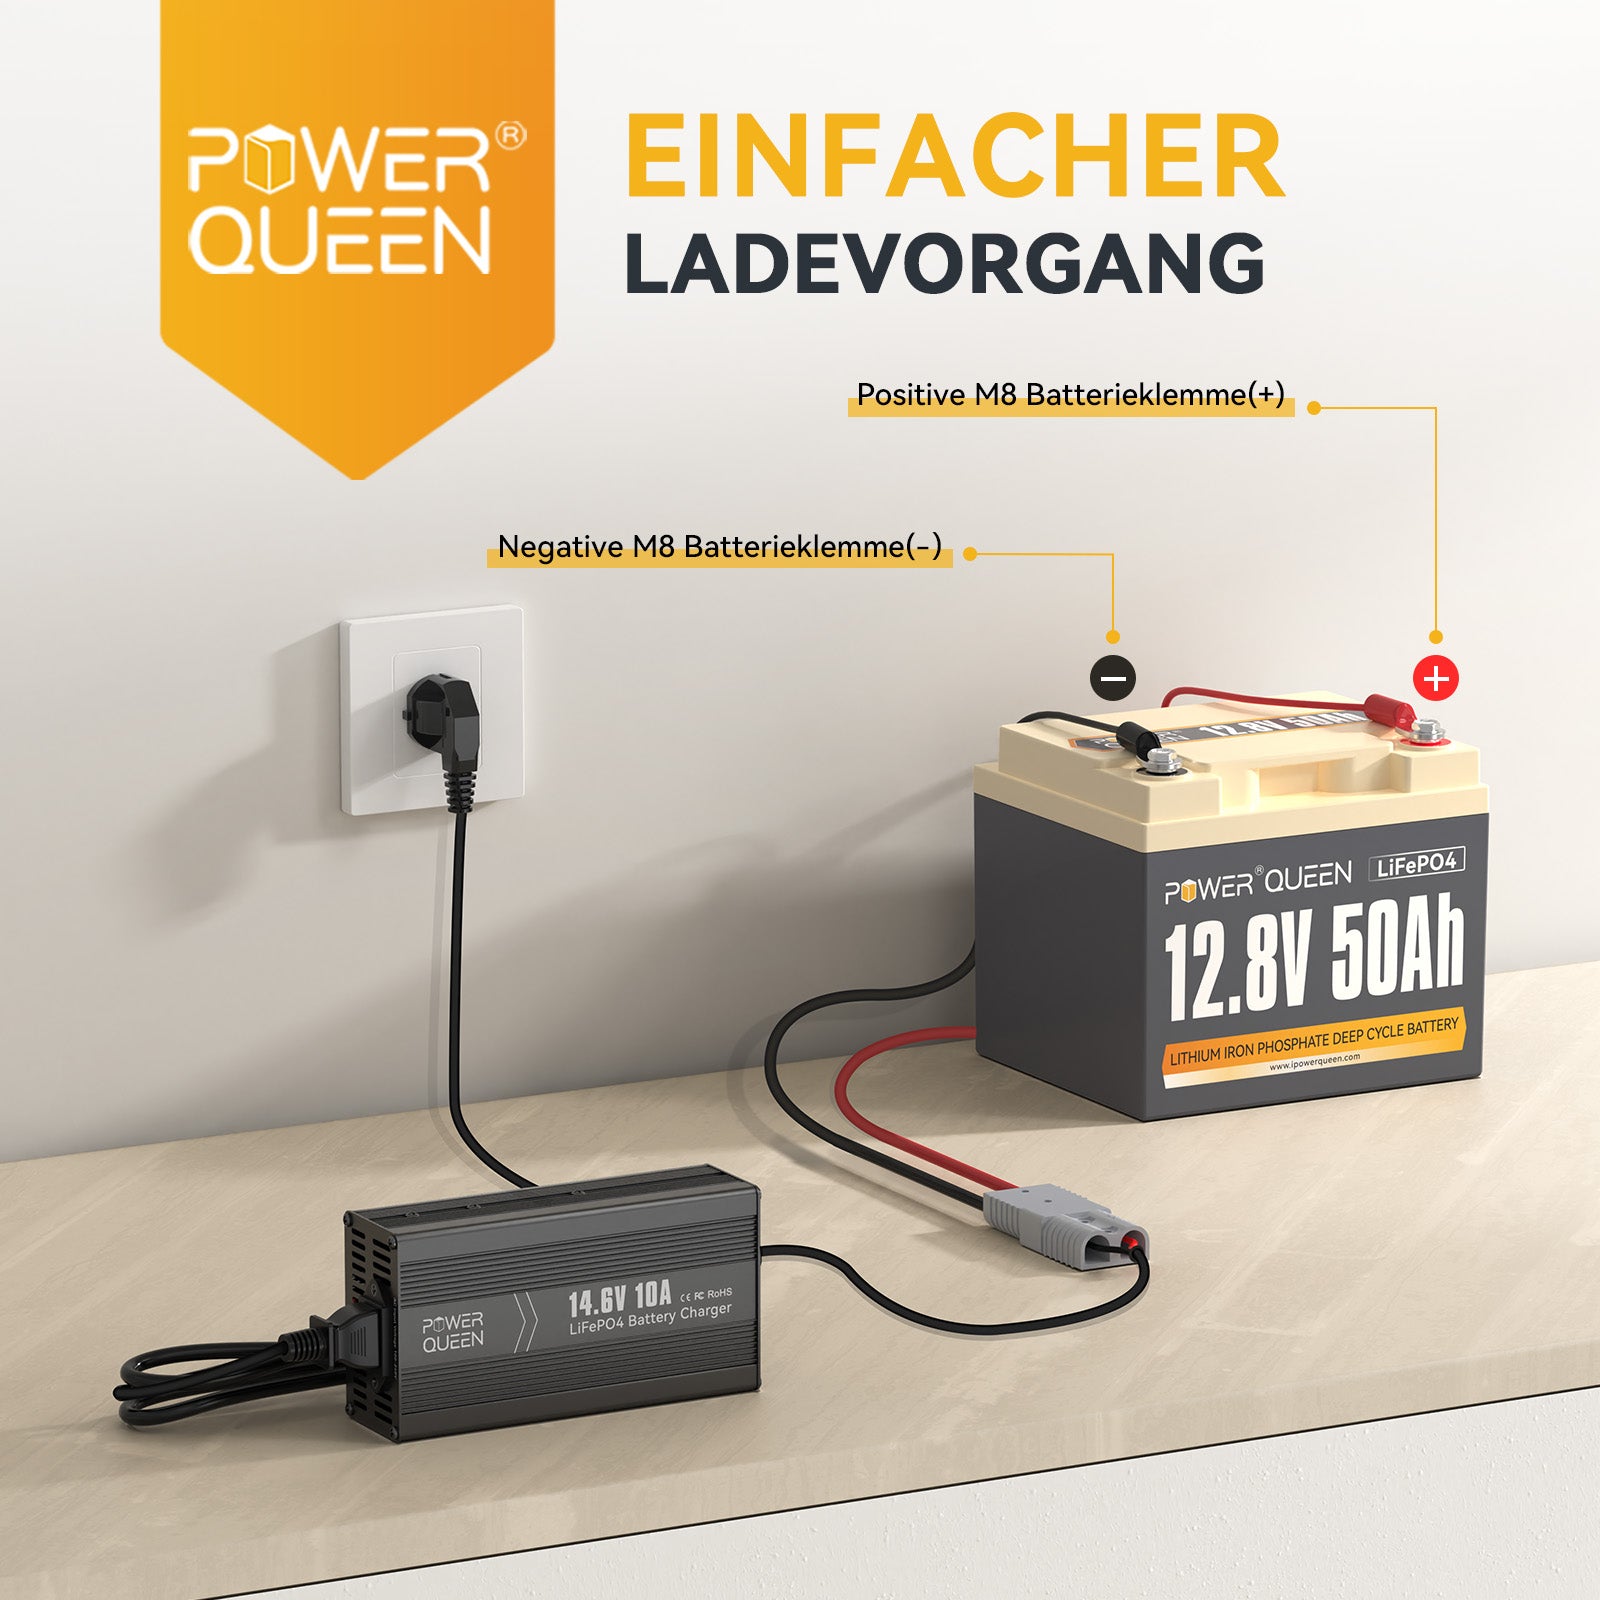 Cargador Power Queen 14.6V 10A LiFePO4 para batería LiFePO4 de 12V